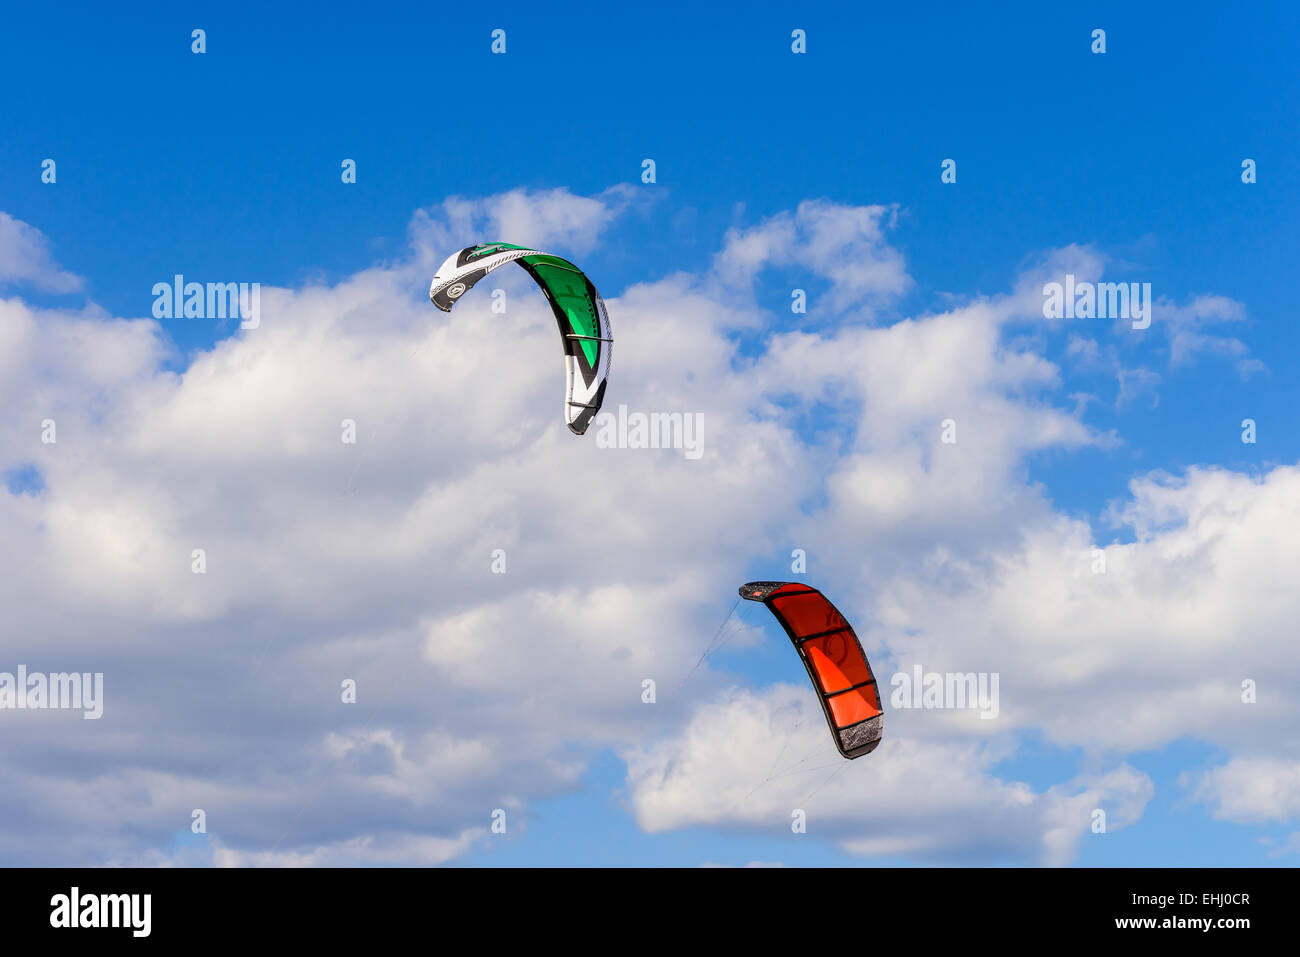 Deux kites surf against a blue sky Banque D'Images